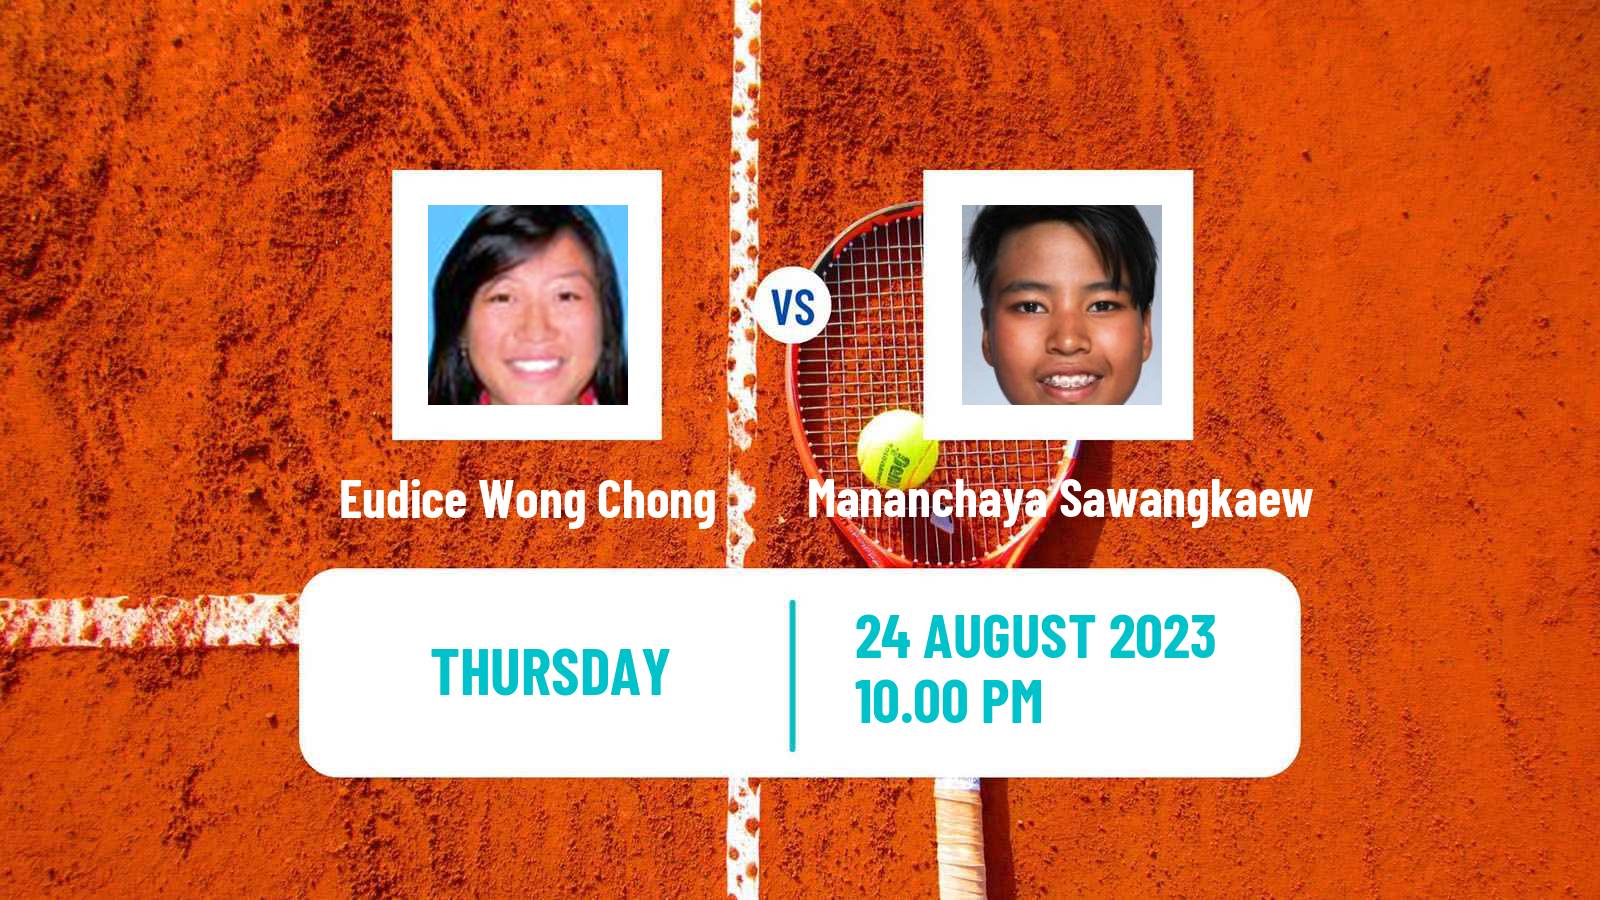 Tennis ITF W40 Hong Kong 2 Women Eudice Wong Chong - Mananchaya Sawangkaew